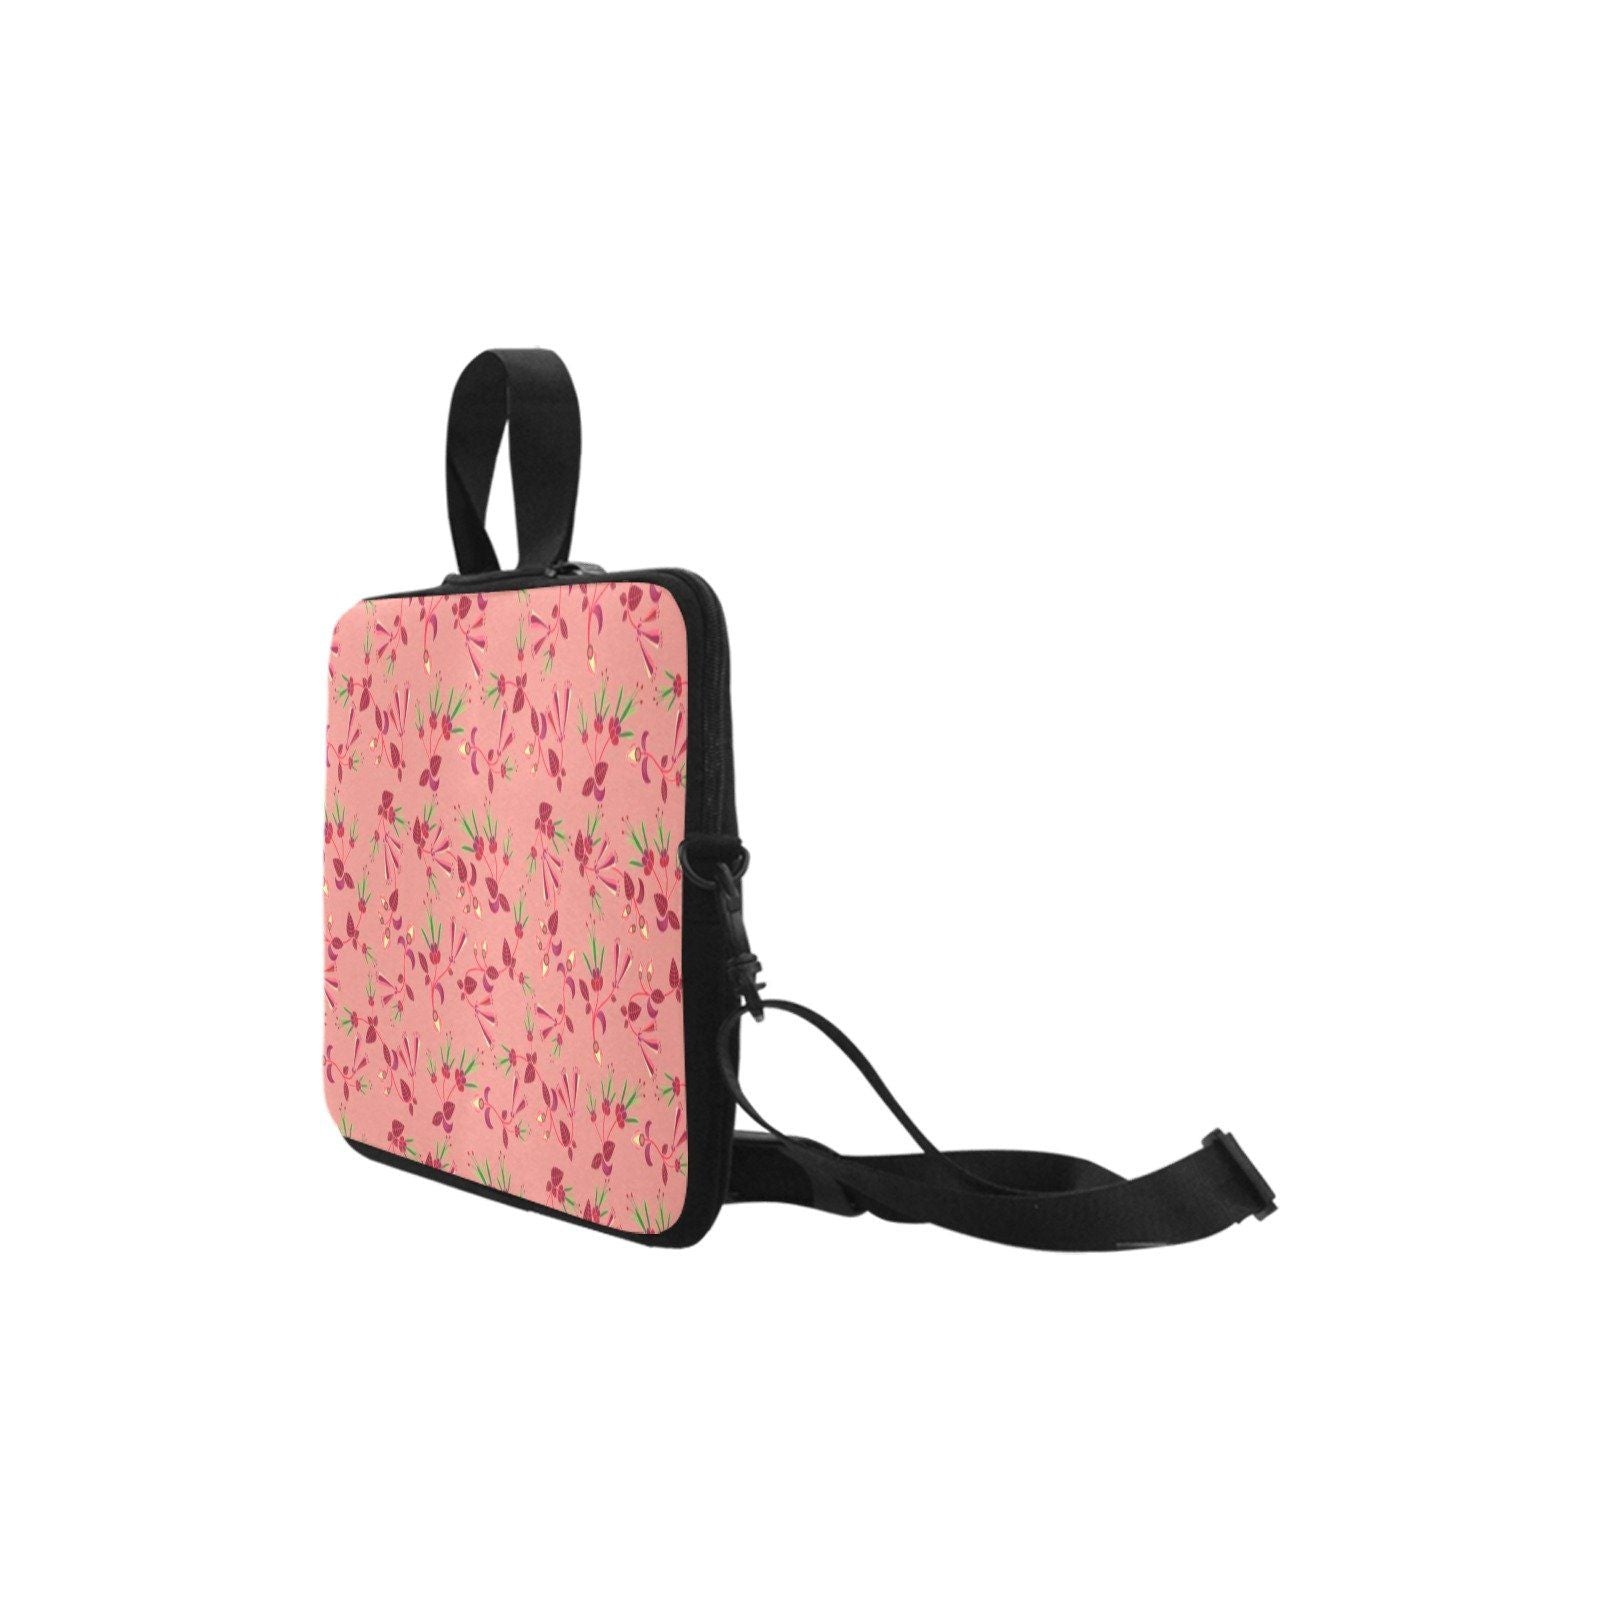 Swift Floral Peach Rouge Remix Laptop Handbags 14" bag e-joyer 